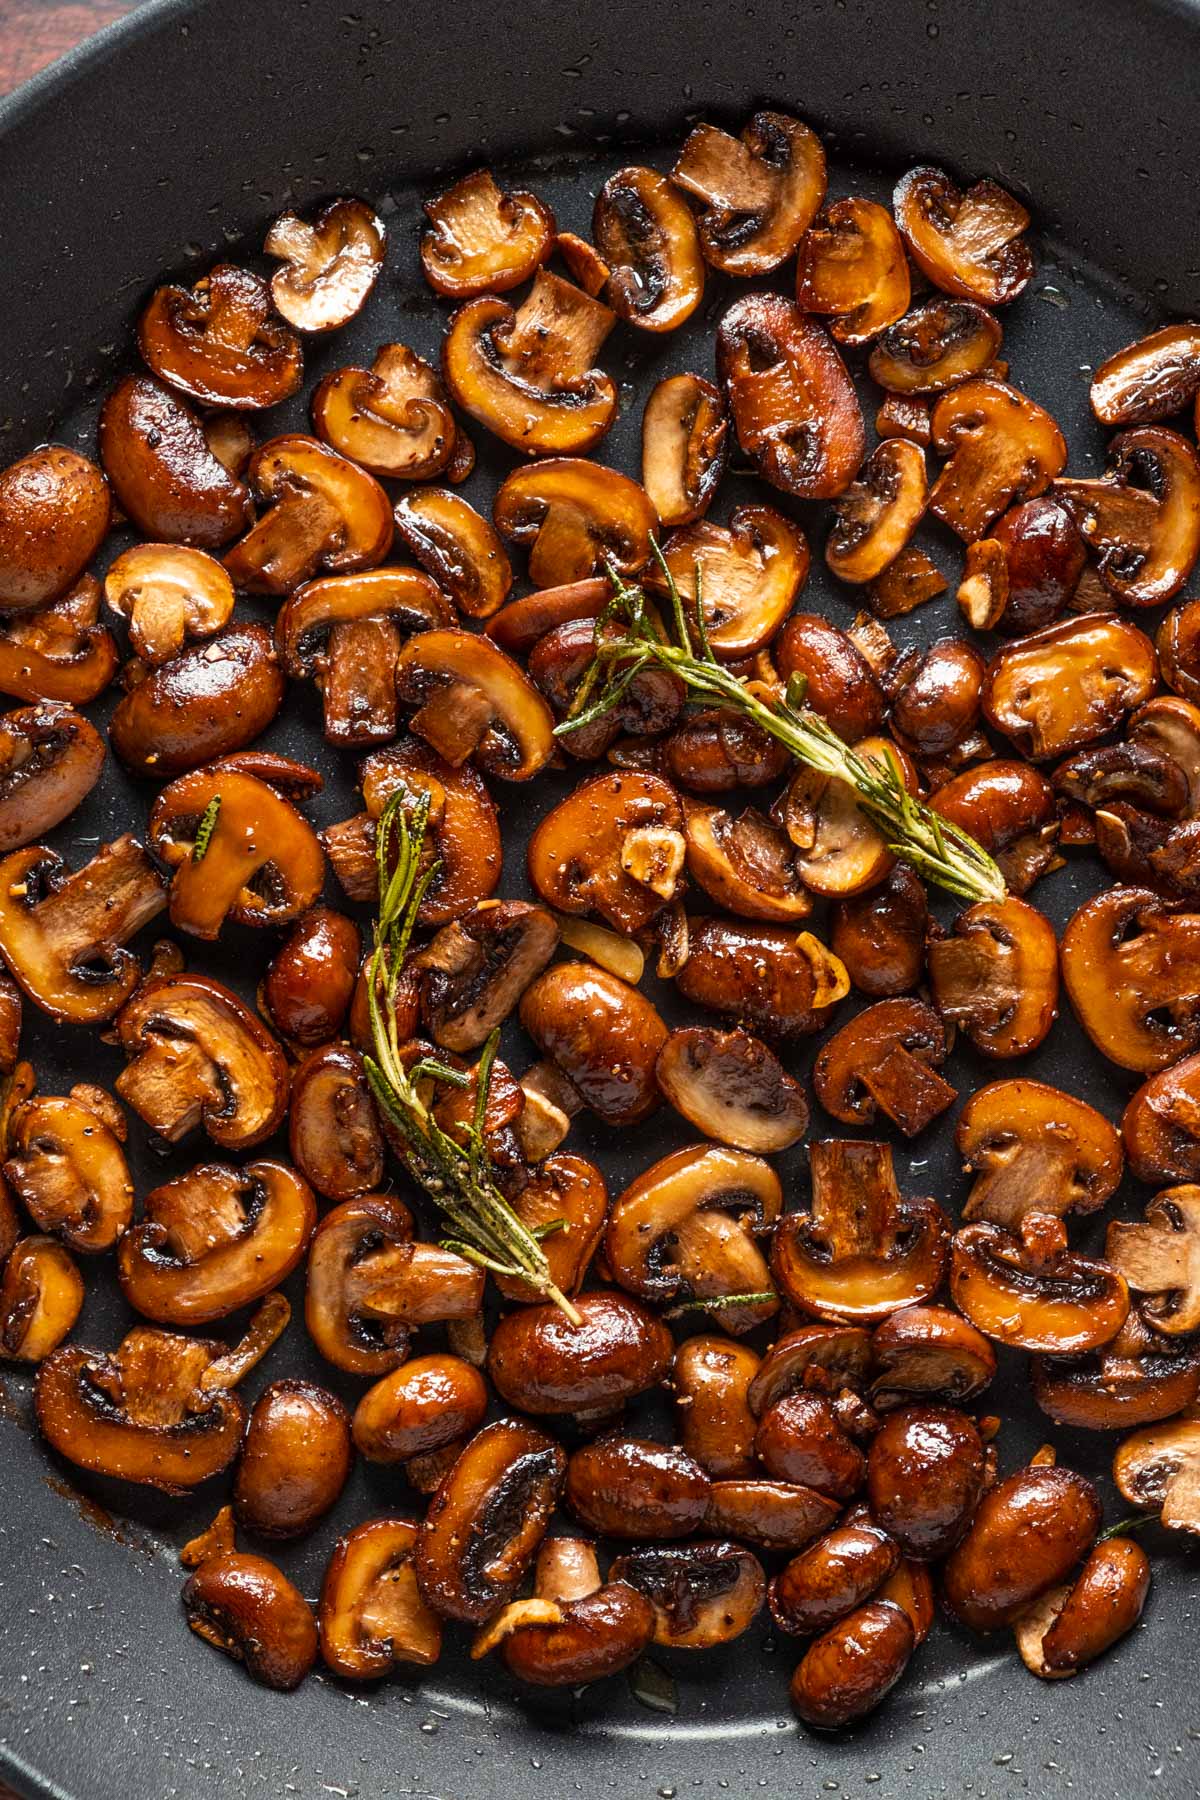 Vegan garlic mushrooms in a skillet with rosemary. 